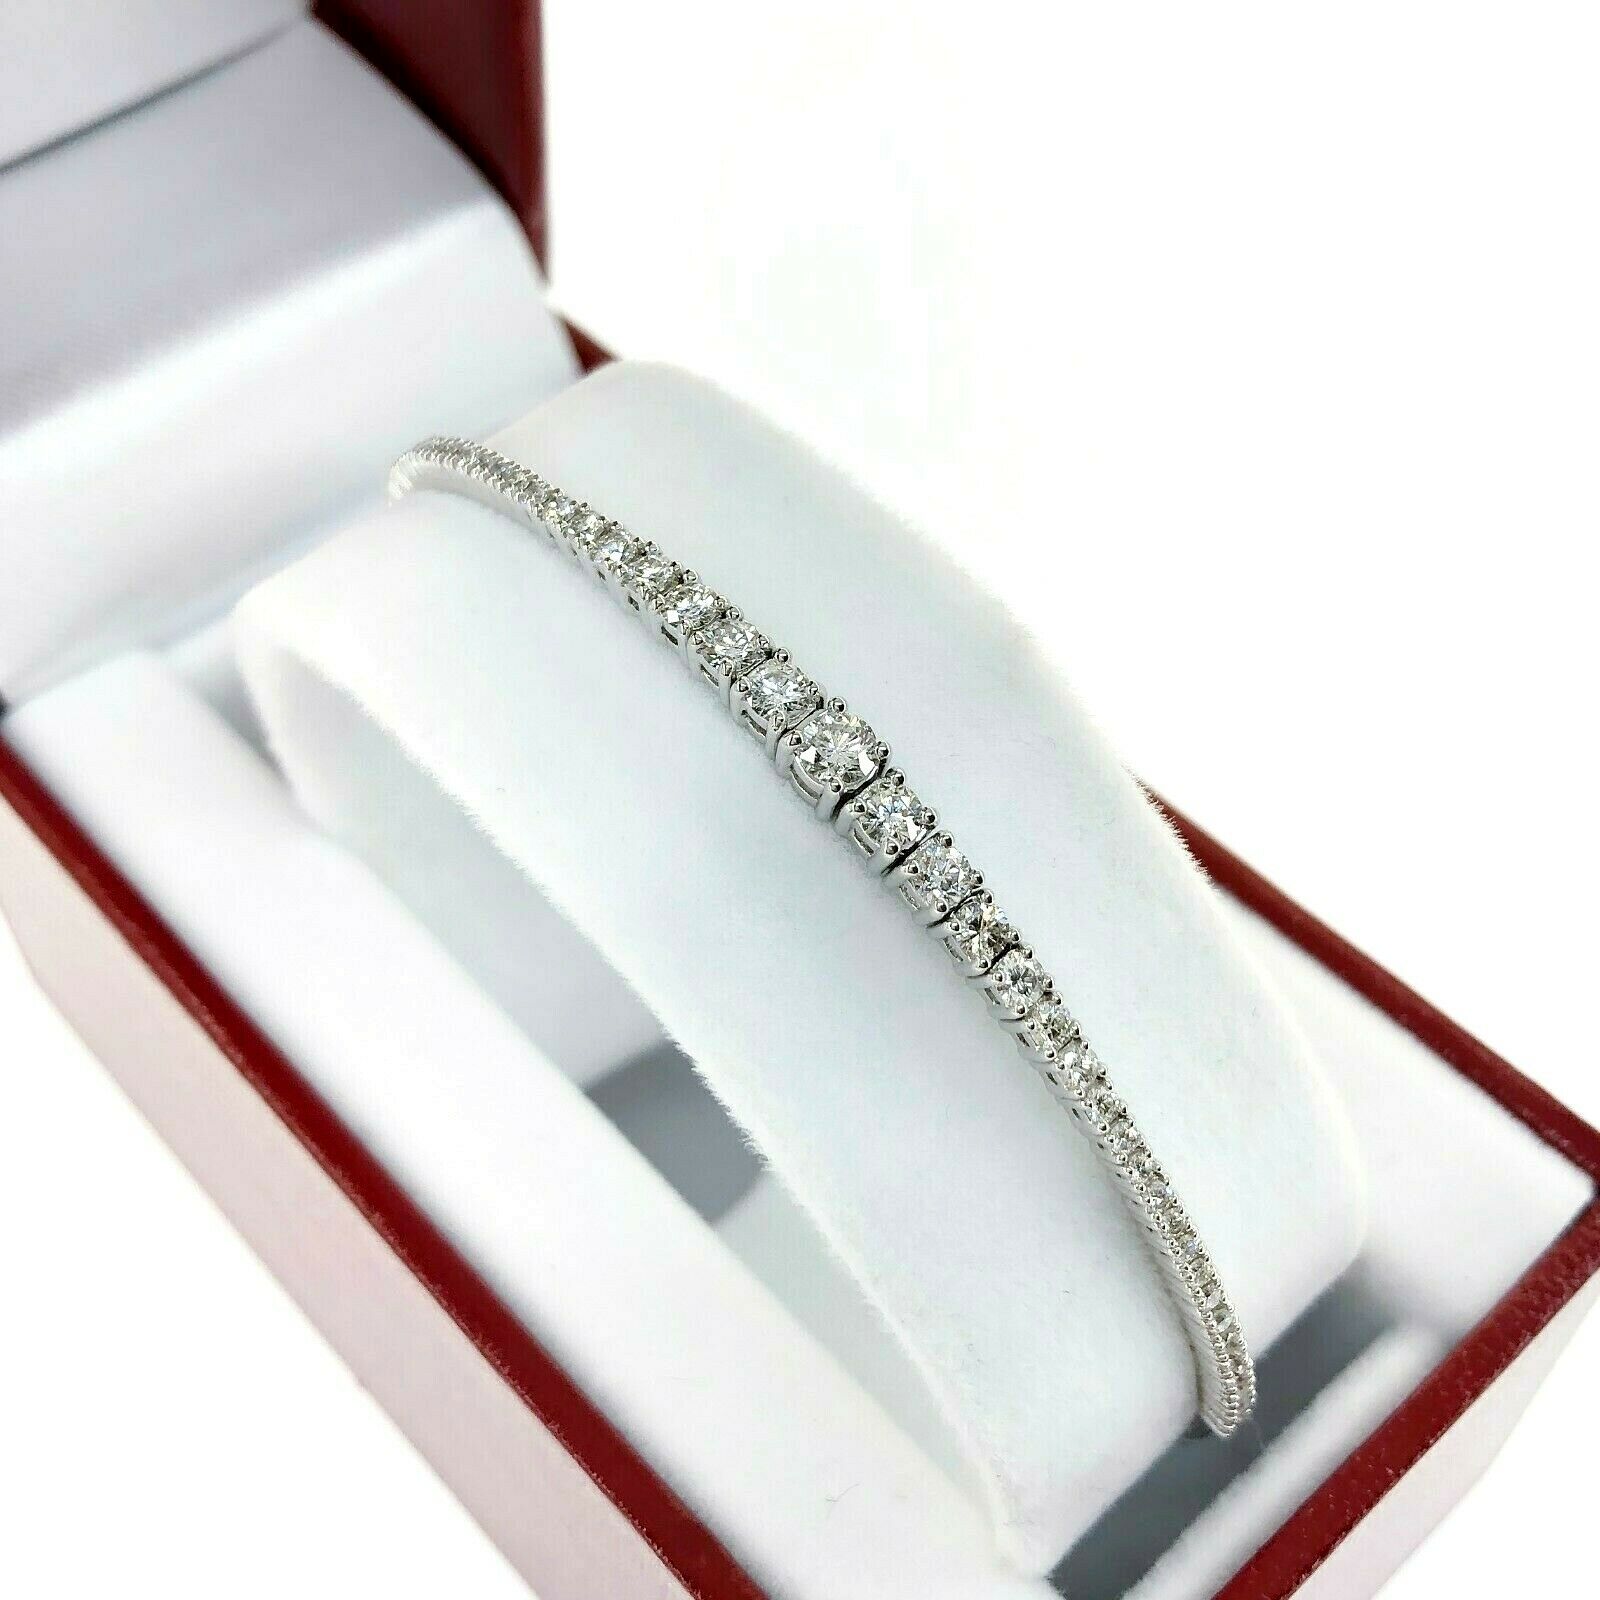 1.14 Carats Graduated Round Diamond Soft Flexible Bangle Bracelet 14K White Gold